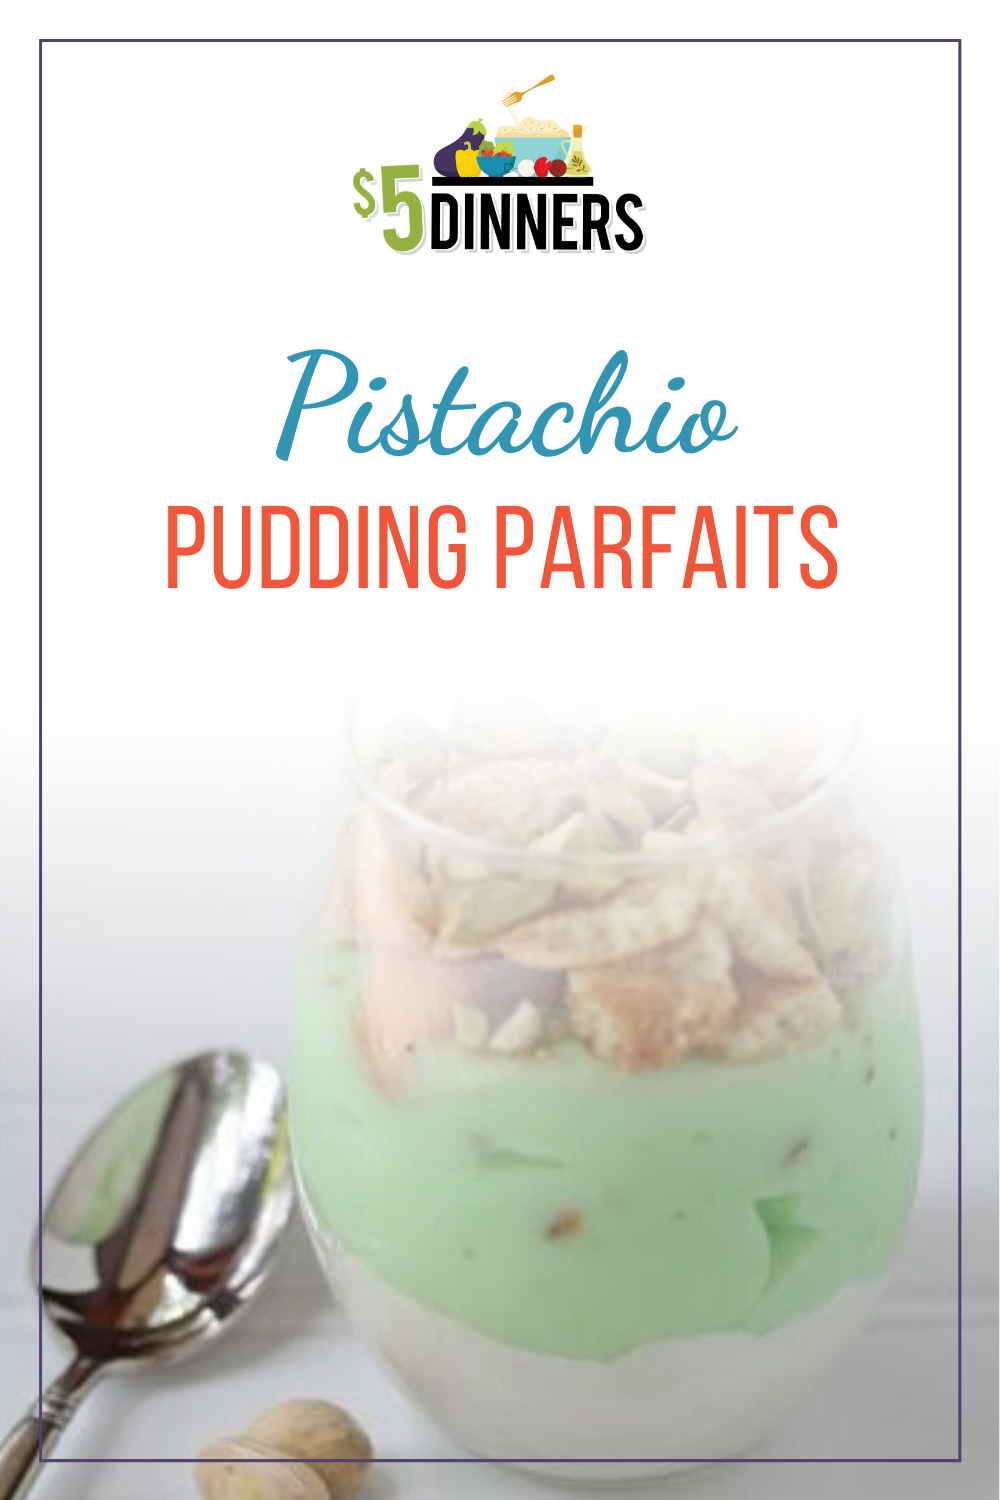 pistachio pudding parfaits